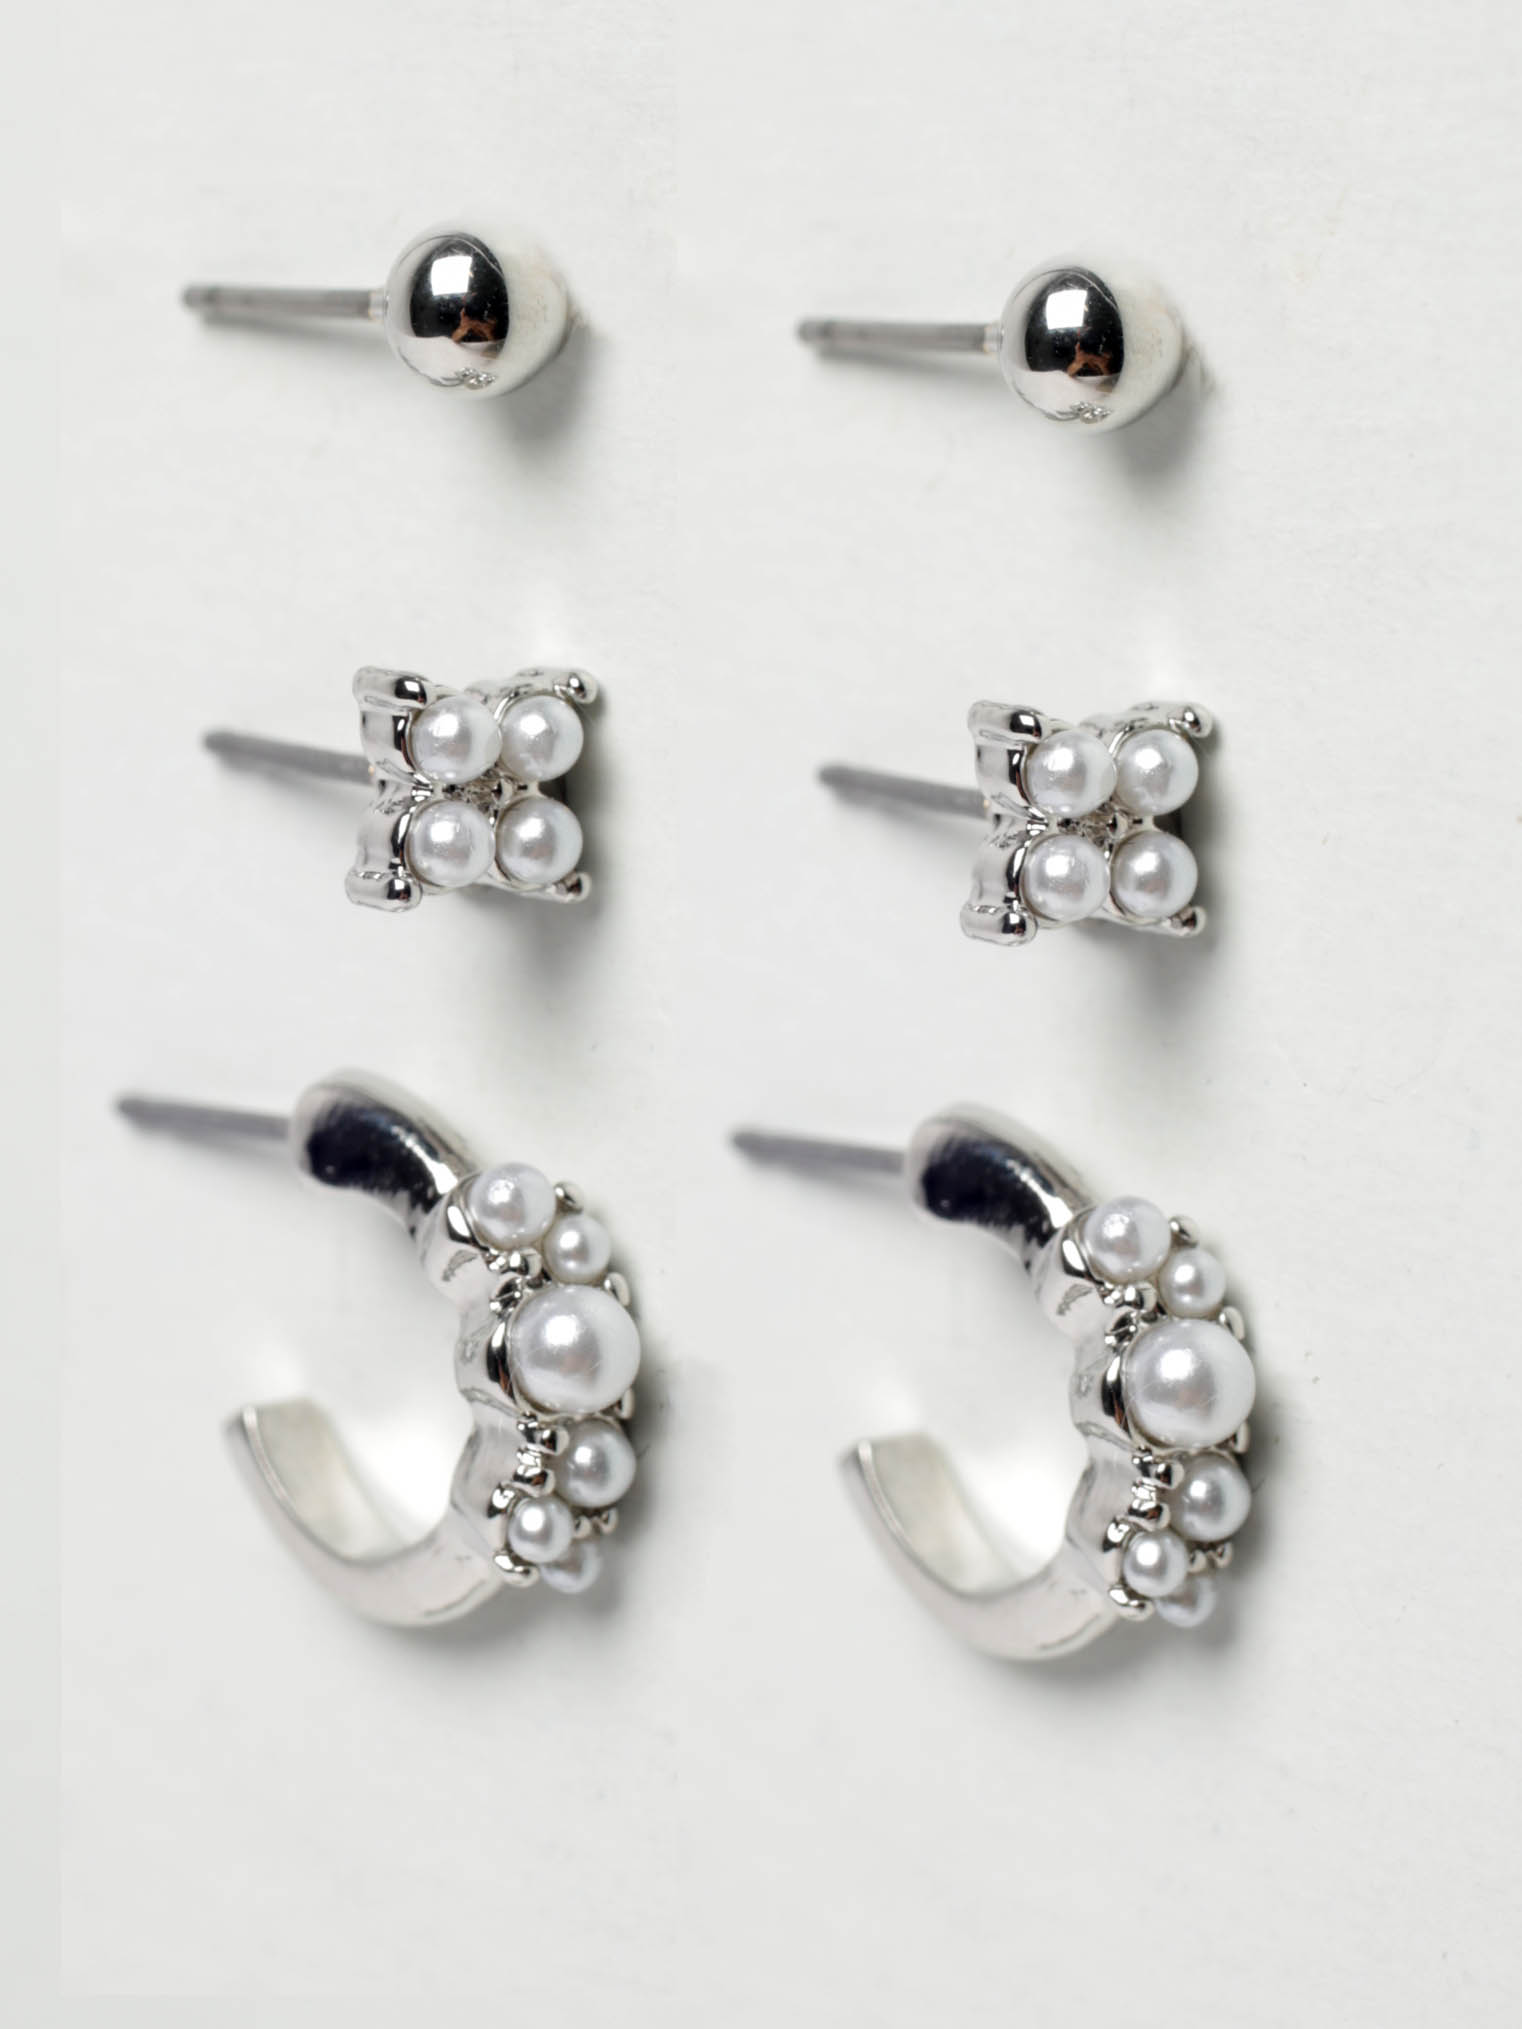 6 pack silver earrings